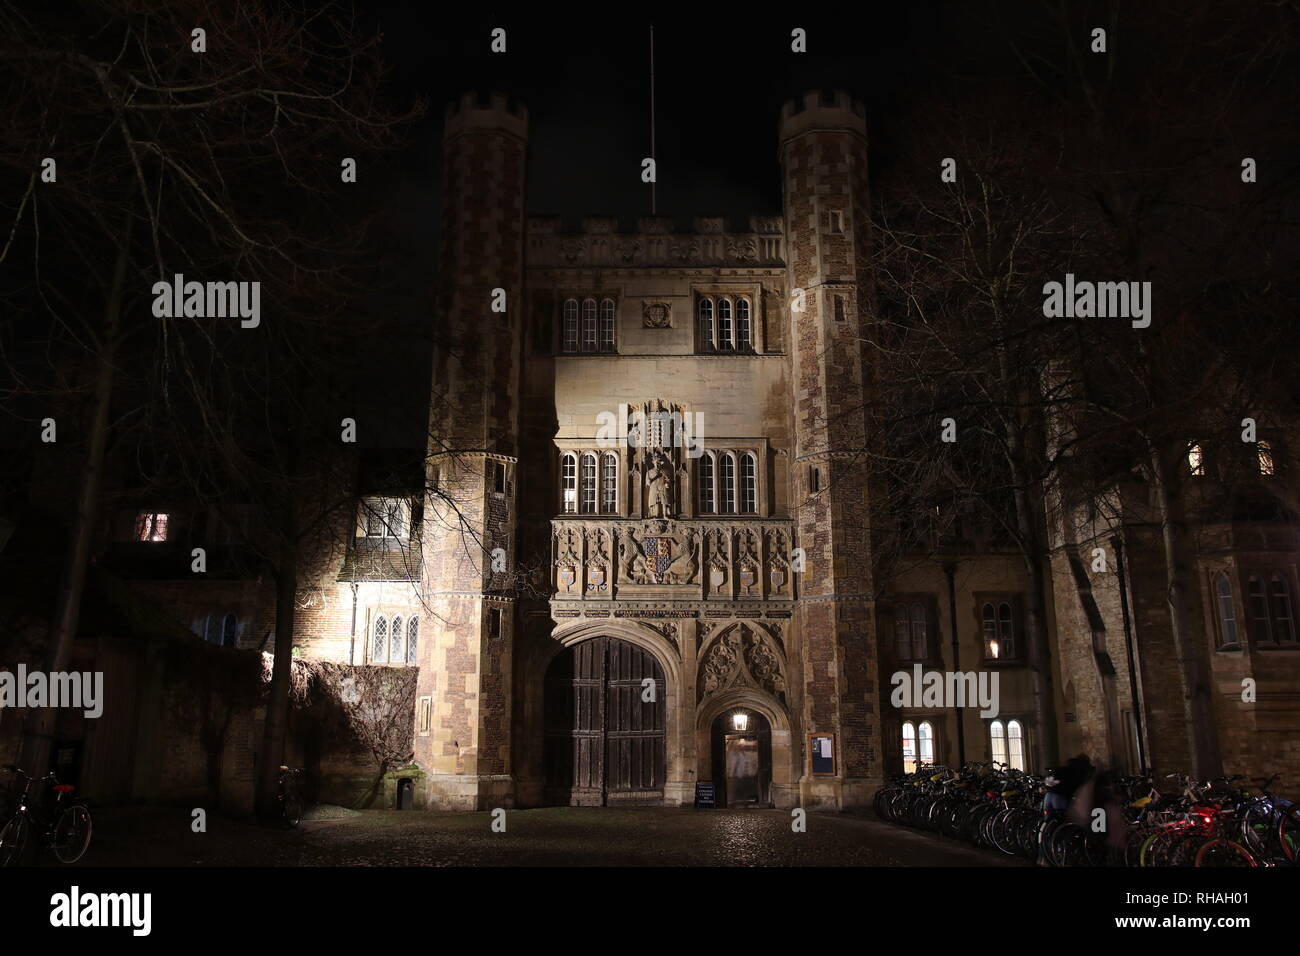 La porte principale de Trinity College à Cambridge, en Angleterre, dans la nuit Banque D'Images